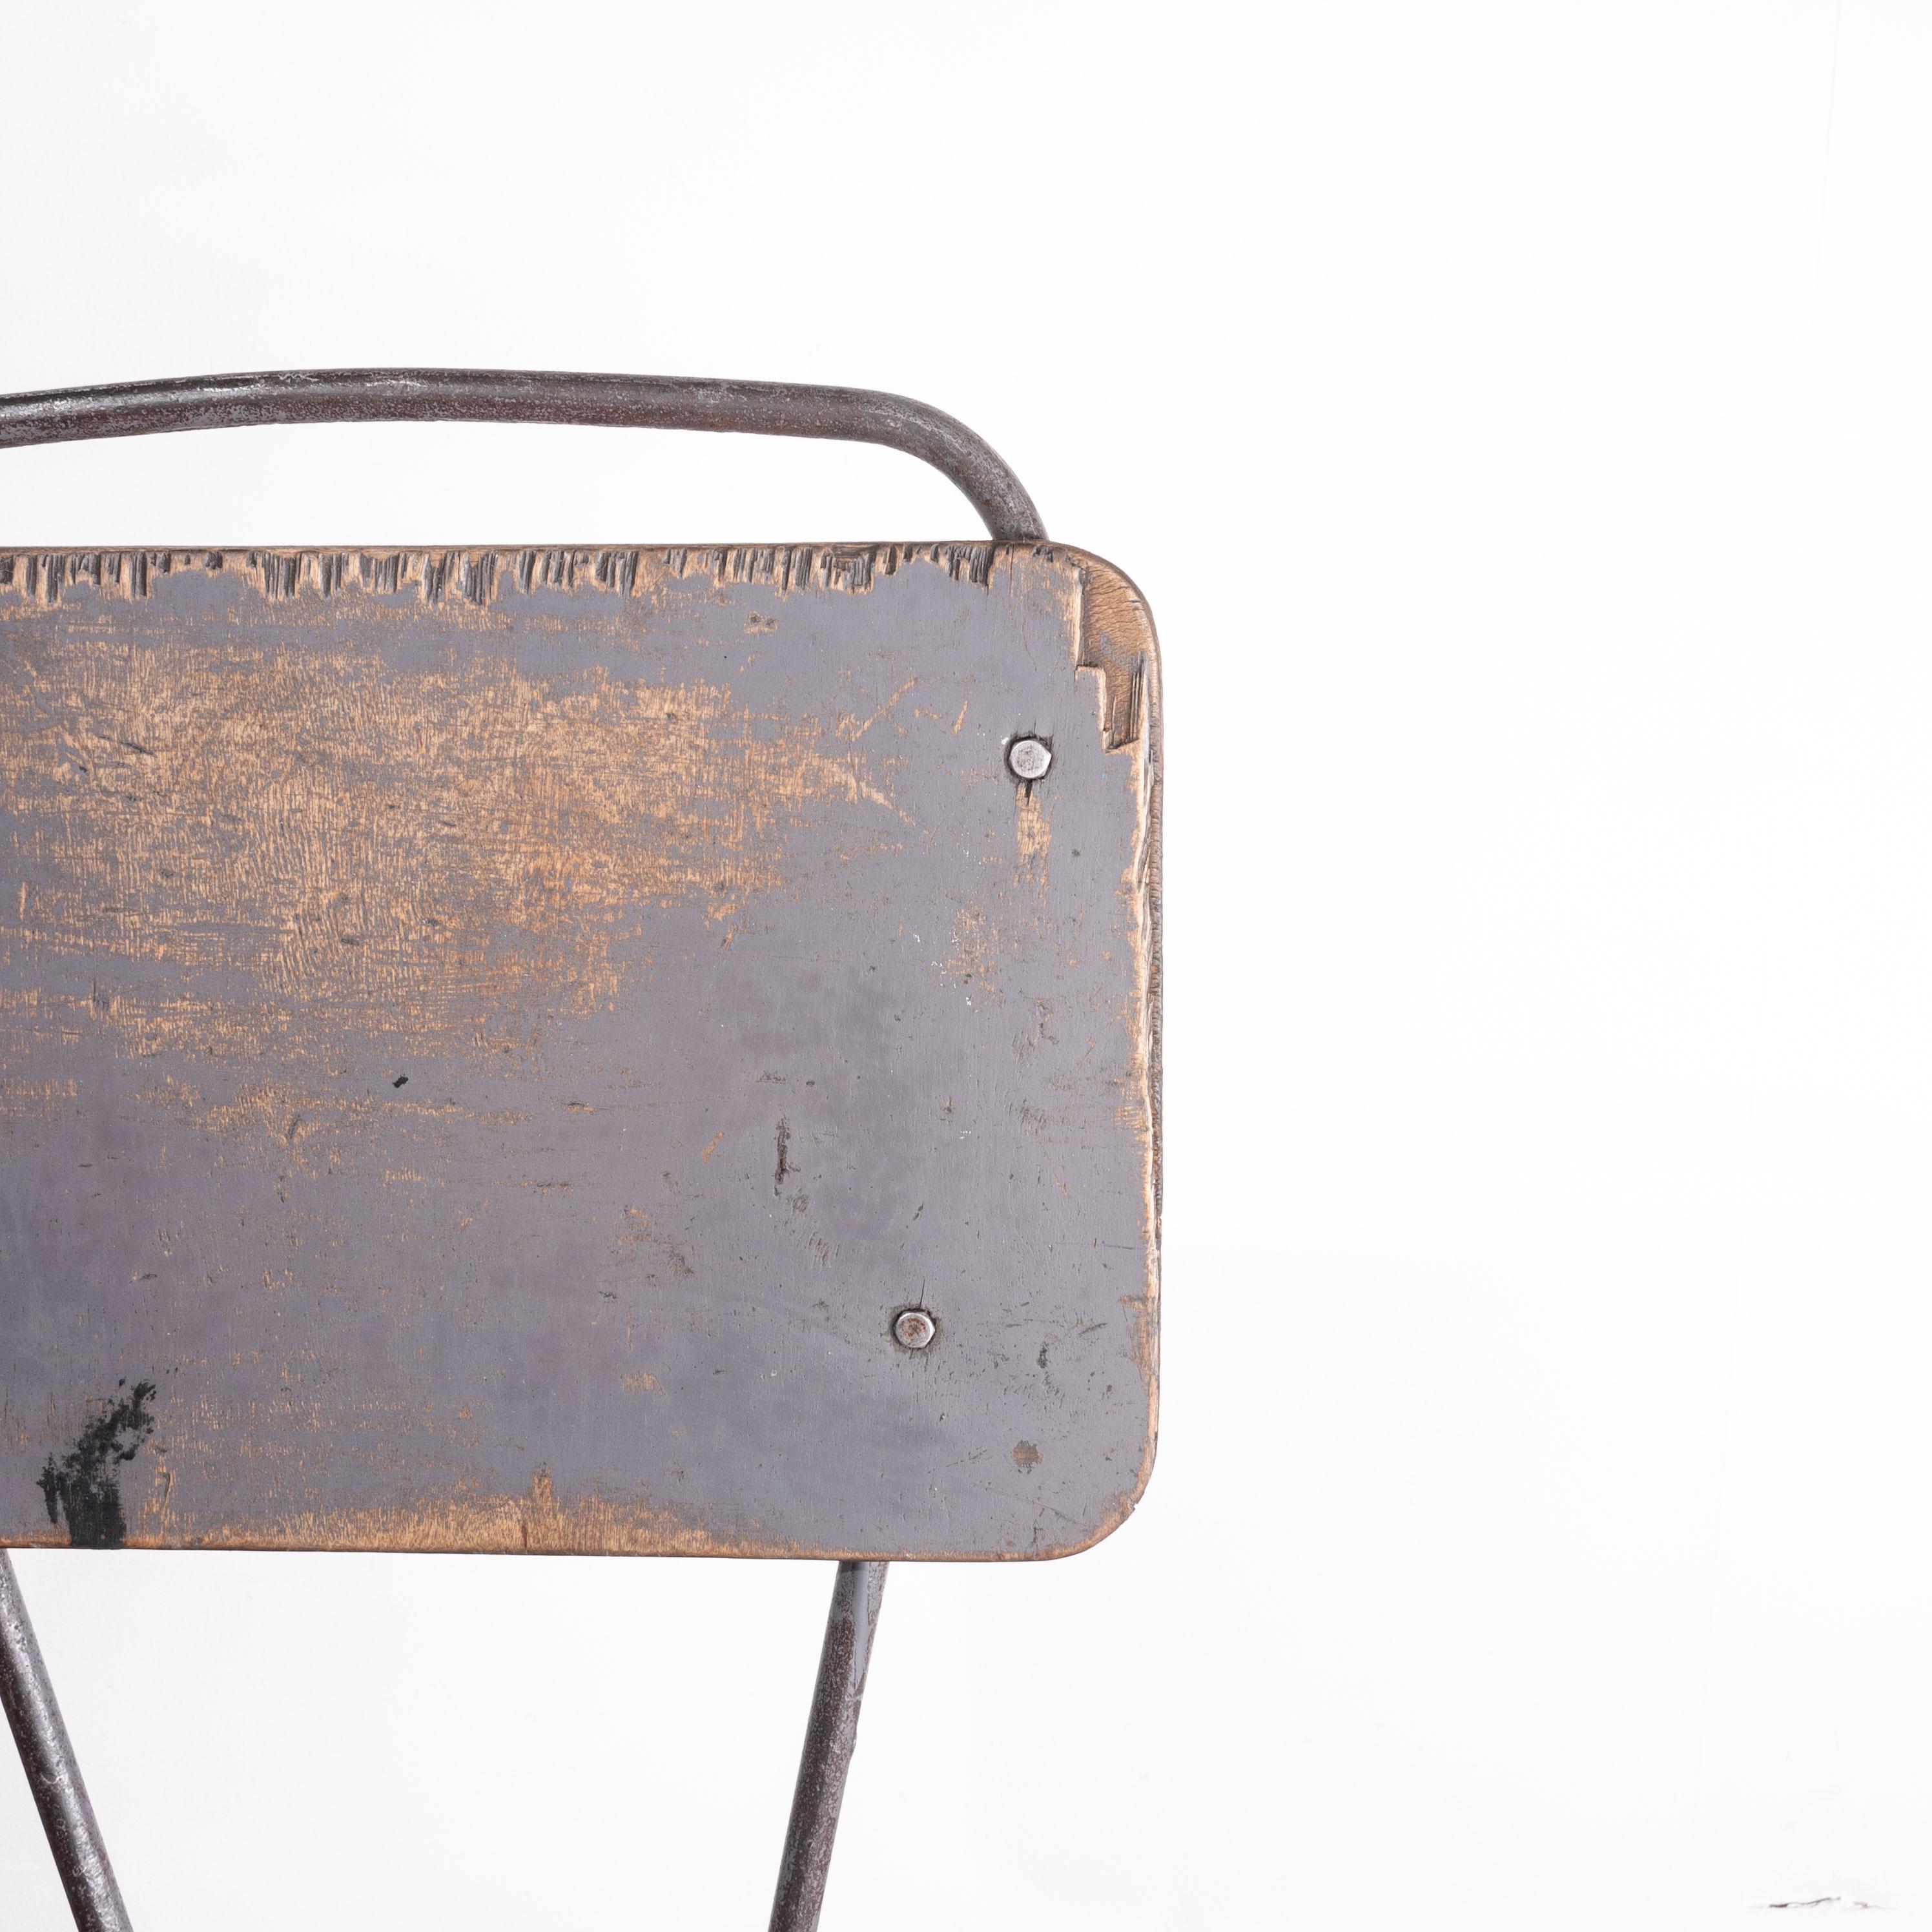 chaise de soudeur industrielle russe des années 1950. Cette chaise a une base incroyablement sur-ingénierie et a eu une vie dure et riche en patine. Le siège mesure 40 cm sur 40 cm et peut être réglé en hauteur de 58 cm à 68 cm grâce à un simple